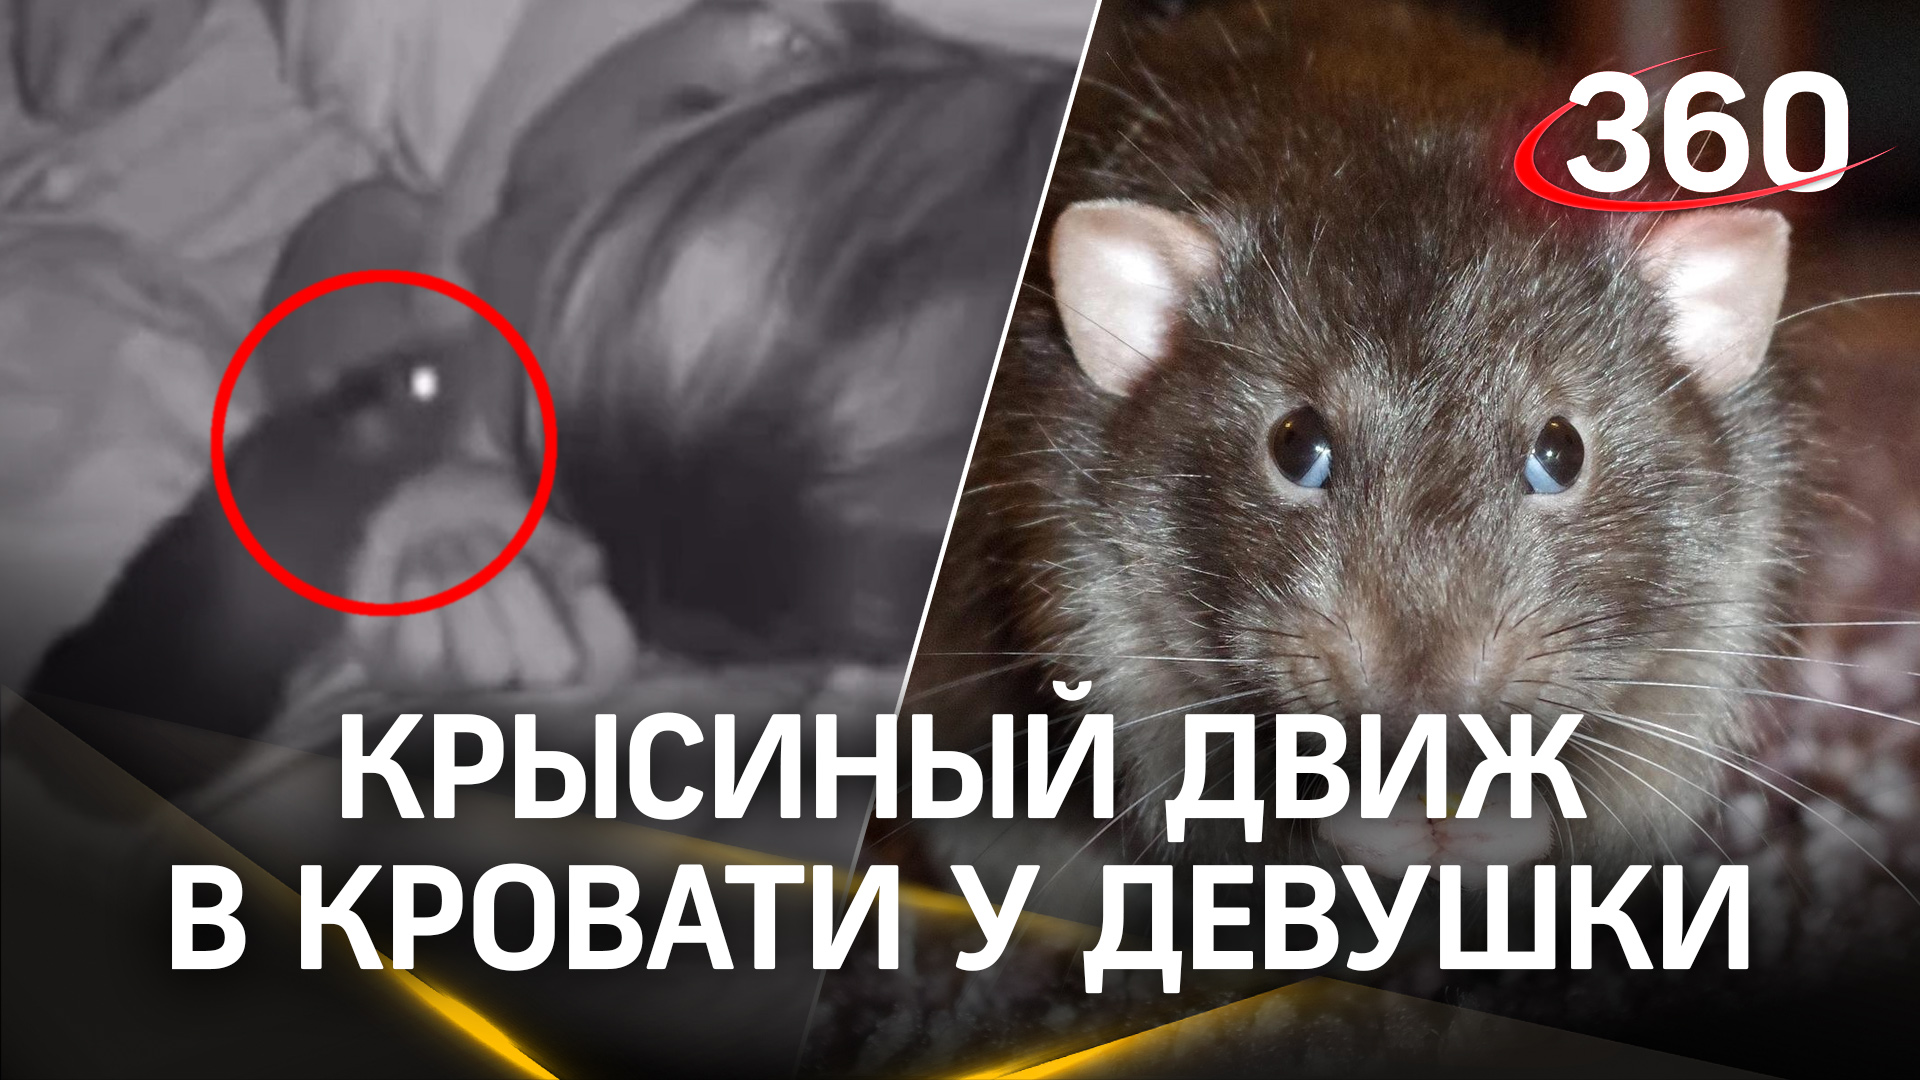 Крысы бегают по спящей в кровати девушке, но она продолжает спать сладким сном